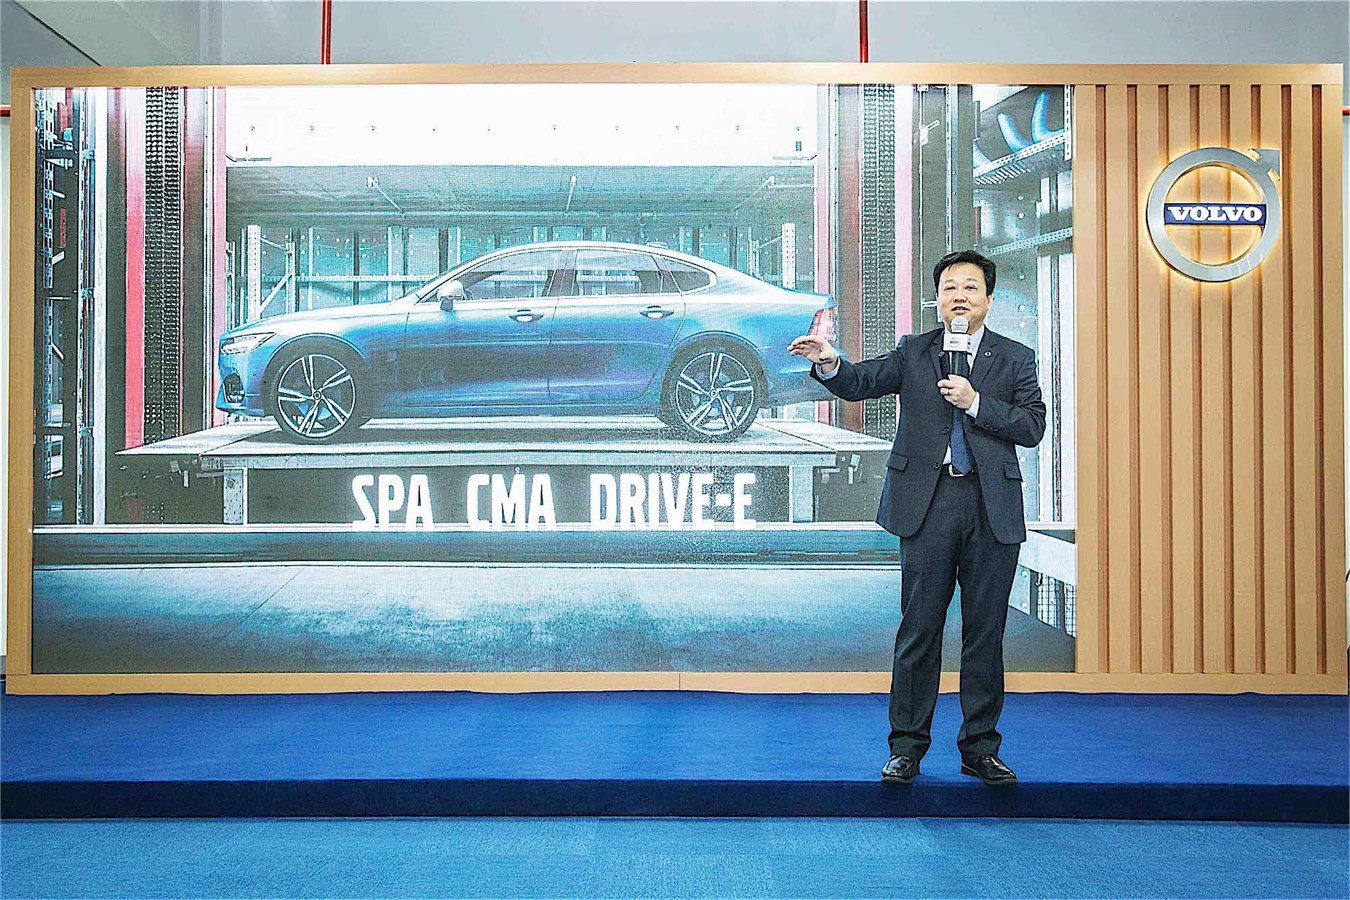 沃尔沃汽车集团亚太区研发副总裁沈峰博士为媒体介绍沃尔沃未来科技